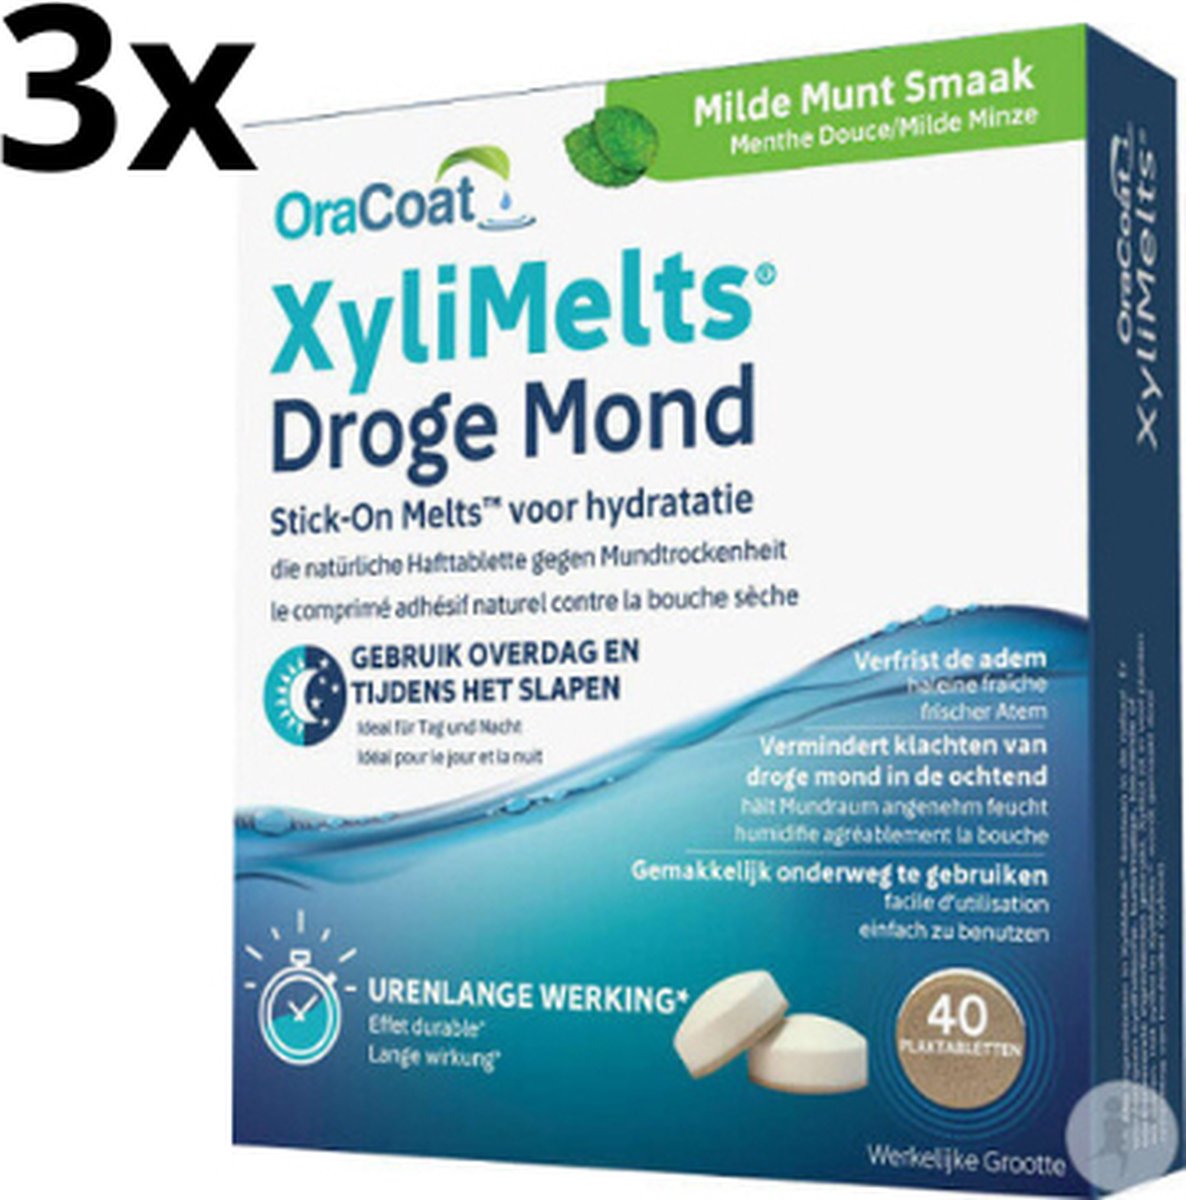 Oracoat Xylimelts Milde Munt - 3 x 40 stuks - Voordeelverpakking